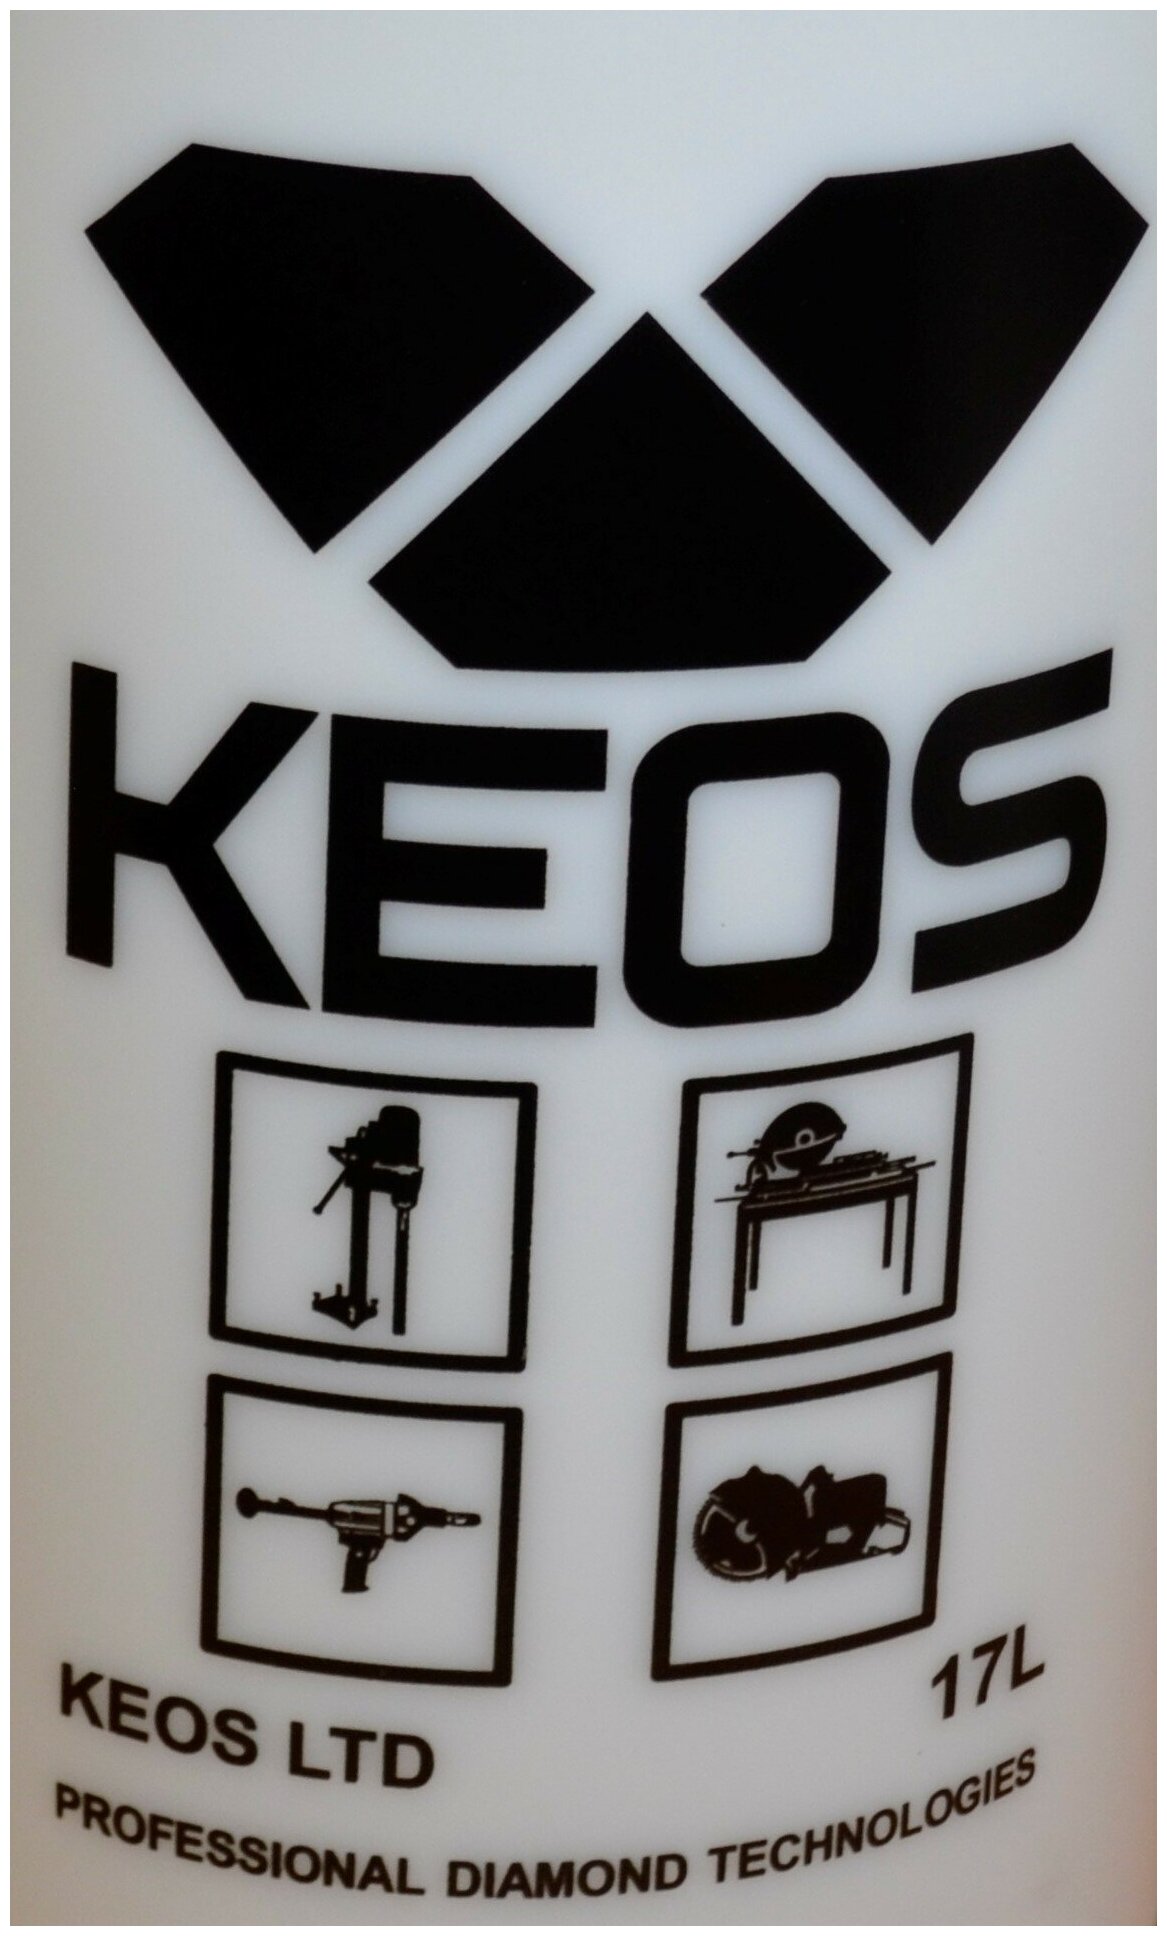 Бак для подачи воды KEOS 17л (WT17L)